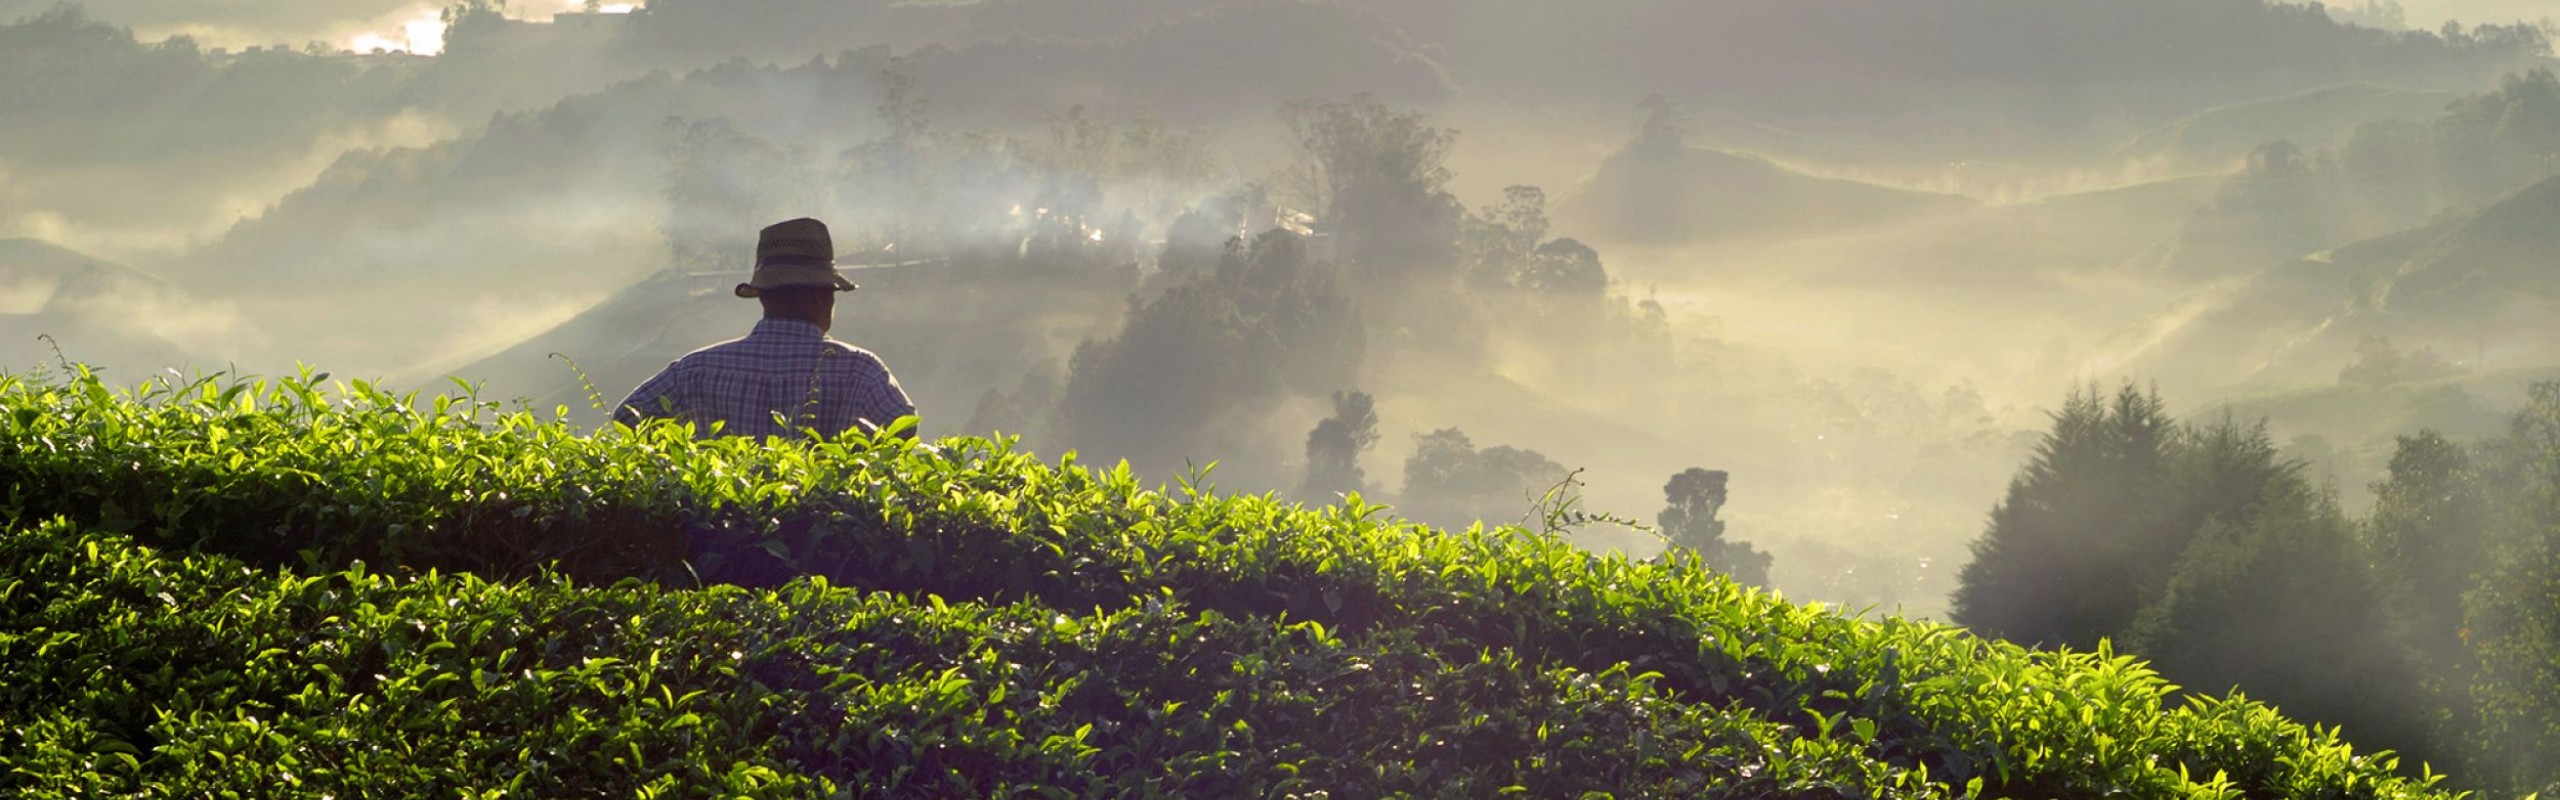 tea-plantation-in-malaysia